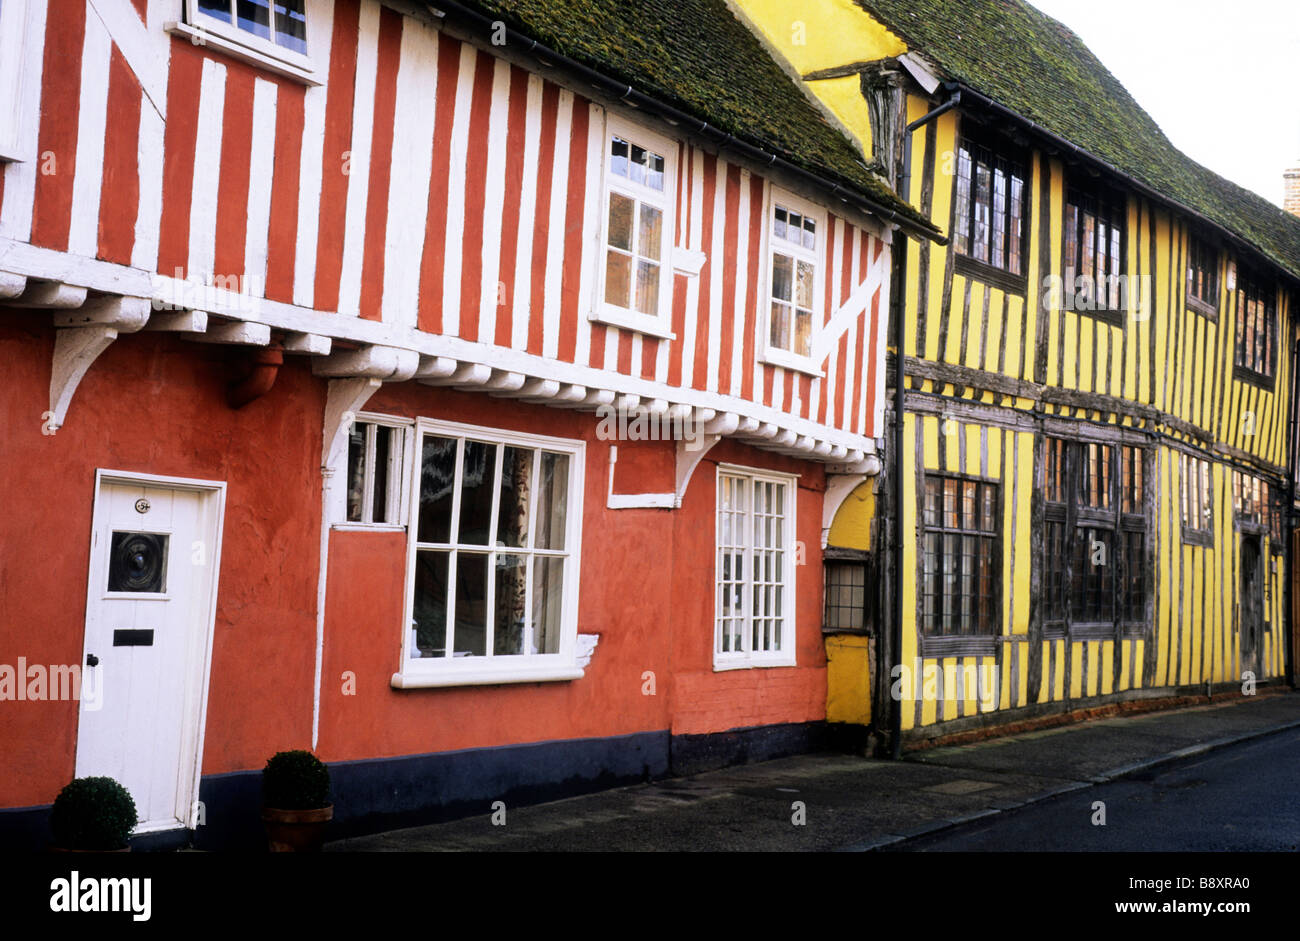 Maisons à colombages lavé couleur Water Street Lavenham Suffolk cité médiévale au charme de l'architecture domestique anglais Tudor pittoresque de charme Banque D'Images